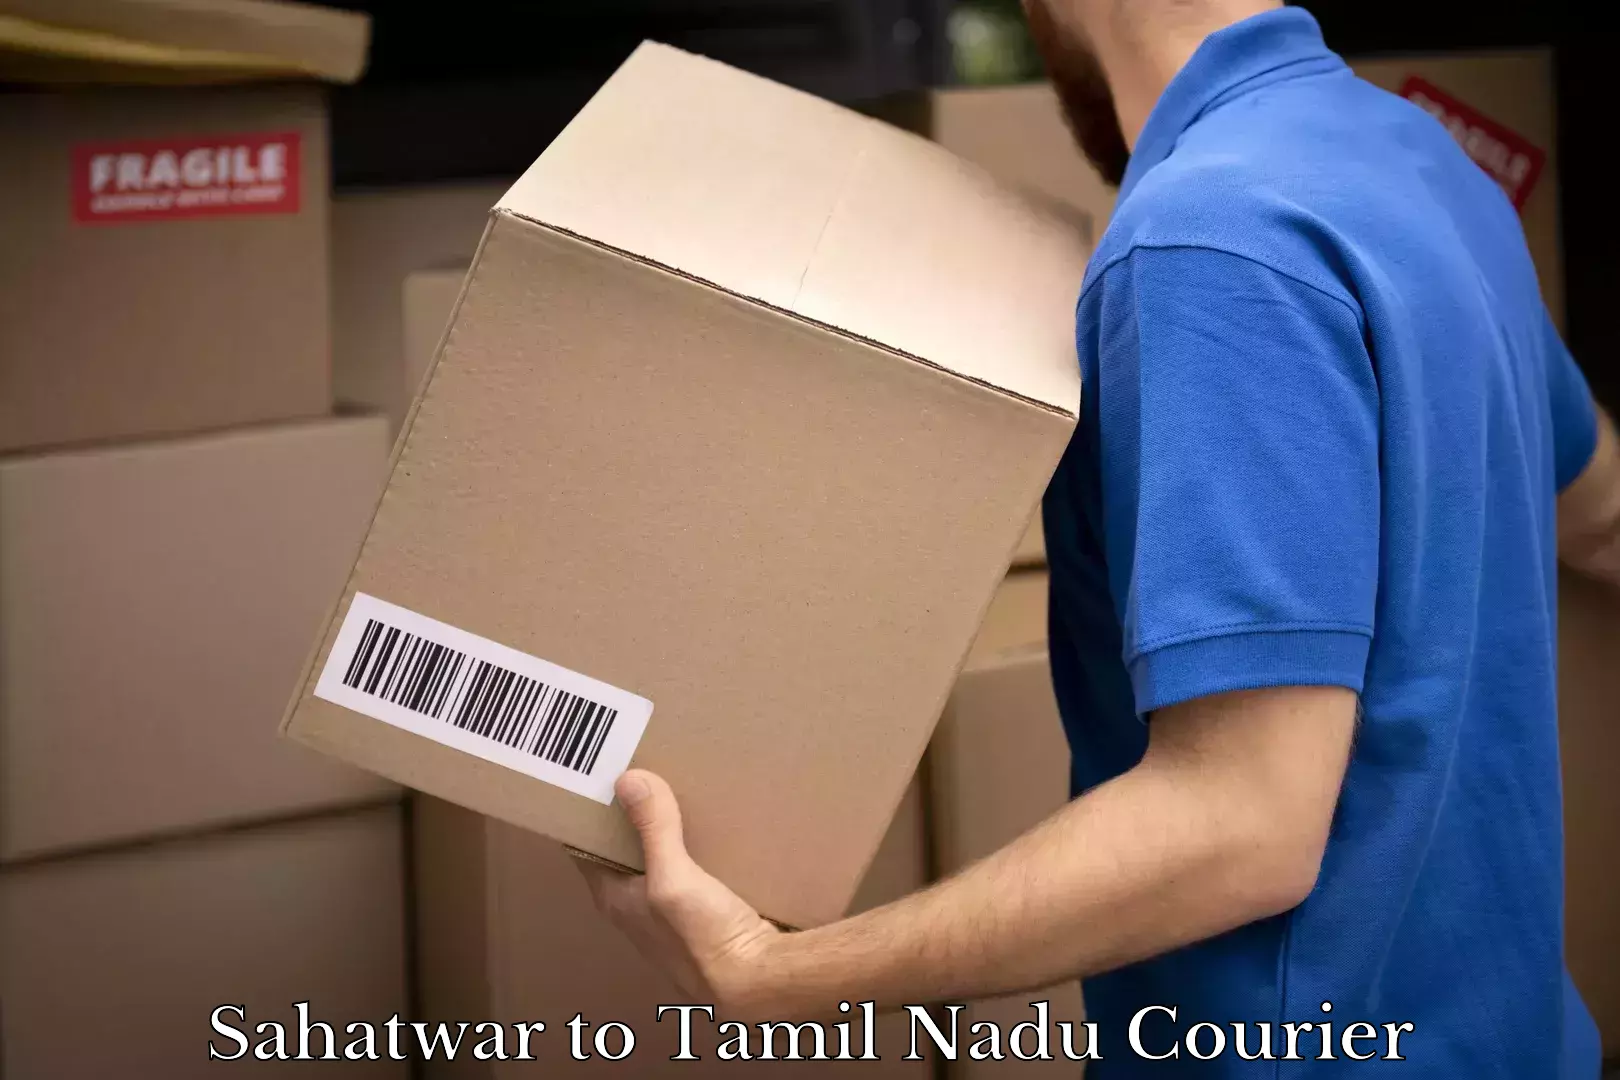 Global courier networks Sahatwar to Tamil Nadu